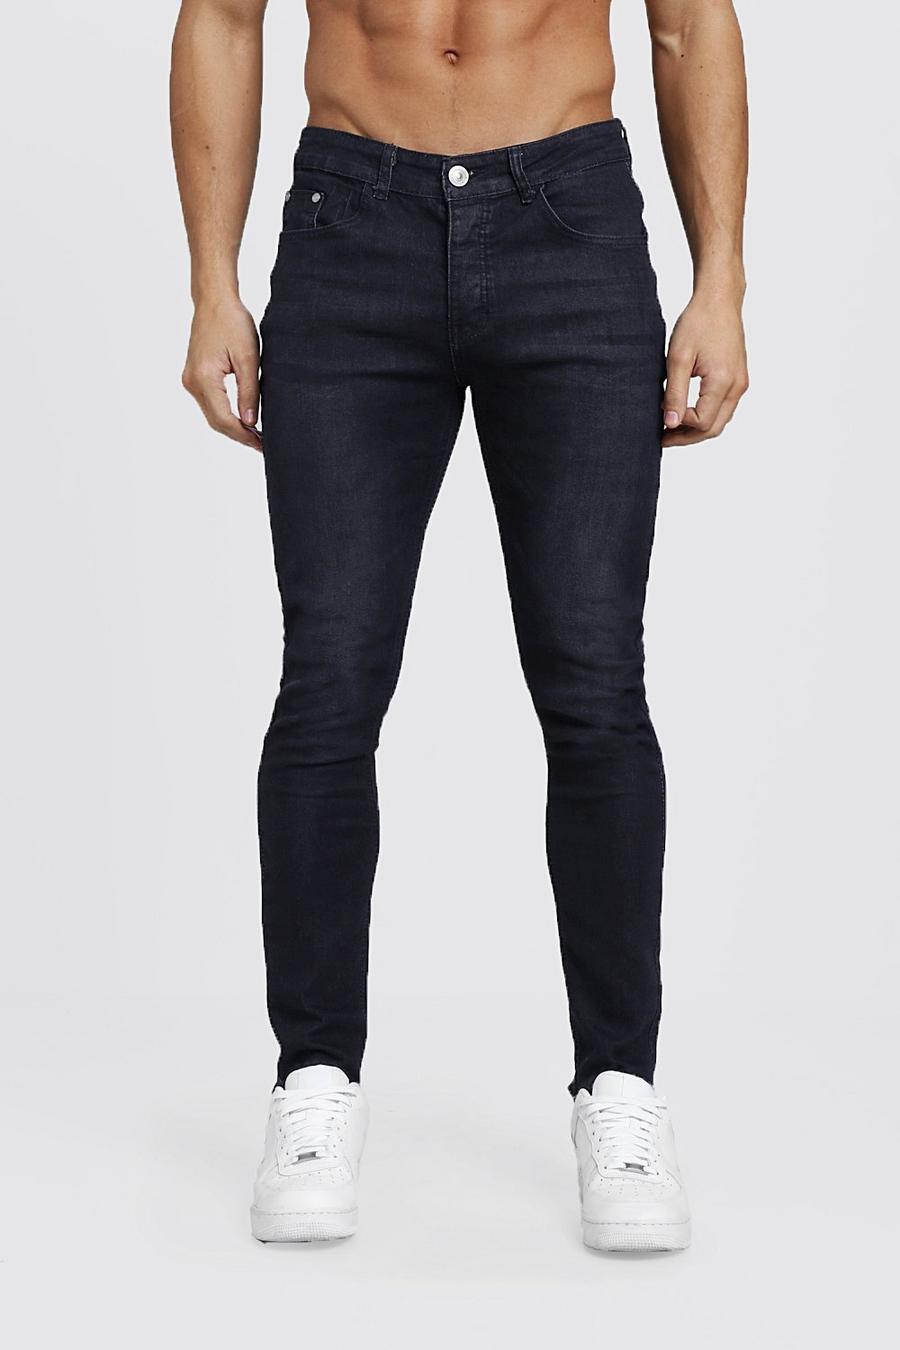 jeans fashion elasticizzati taglio skinny, Nero effetto lavato image number 1